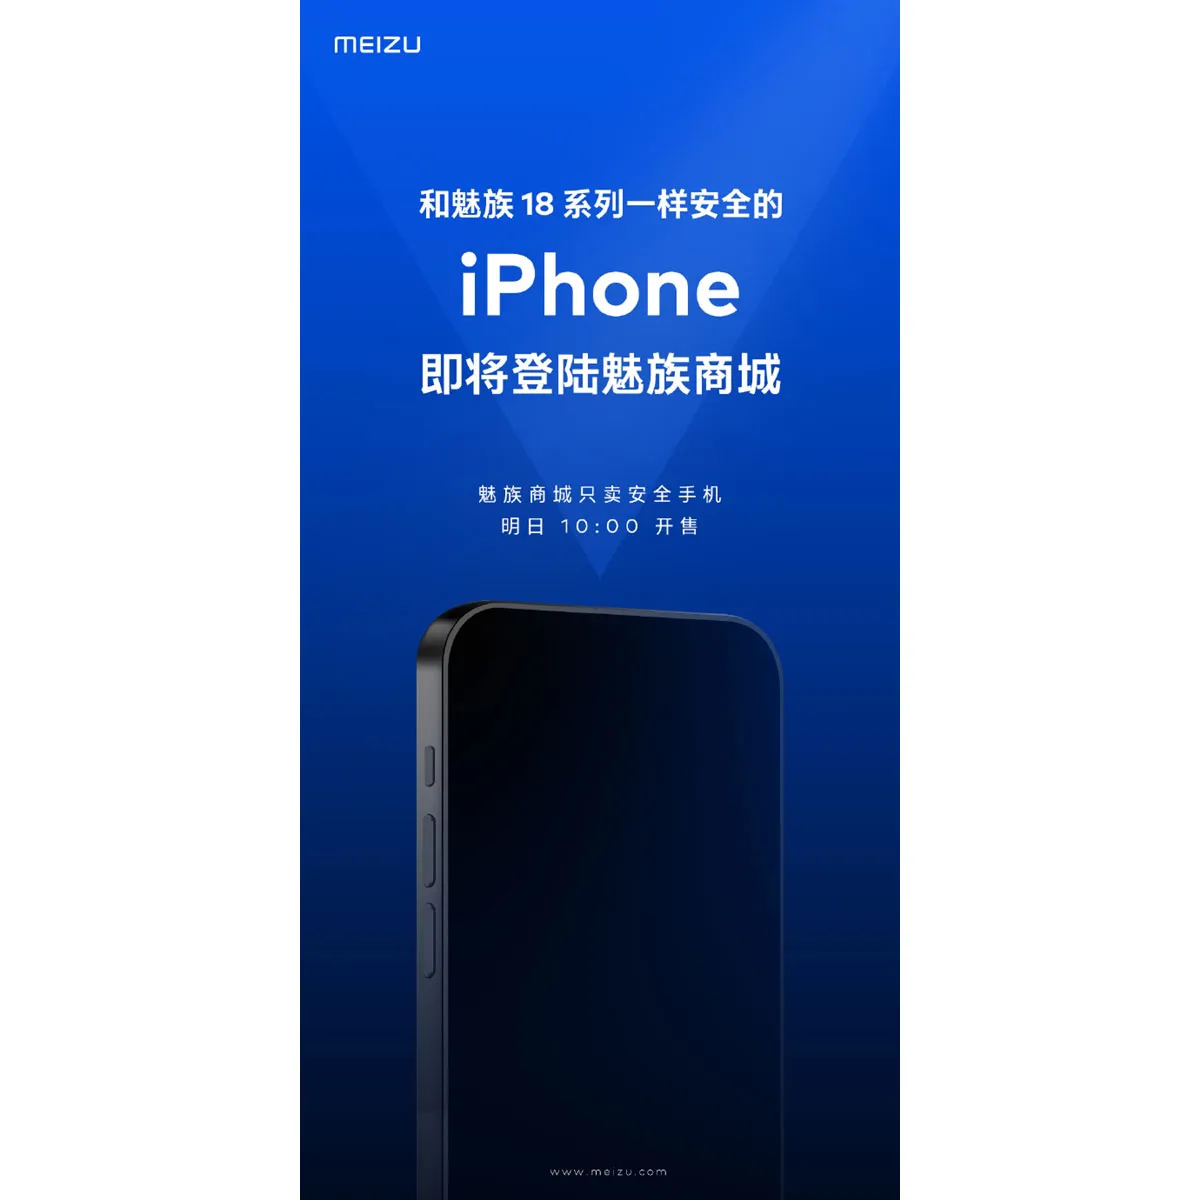 Meizu начала официально продавать iPhone